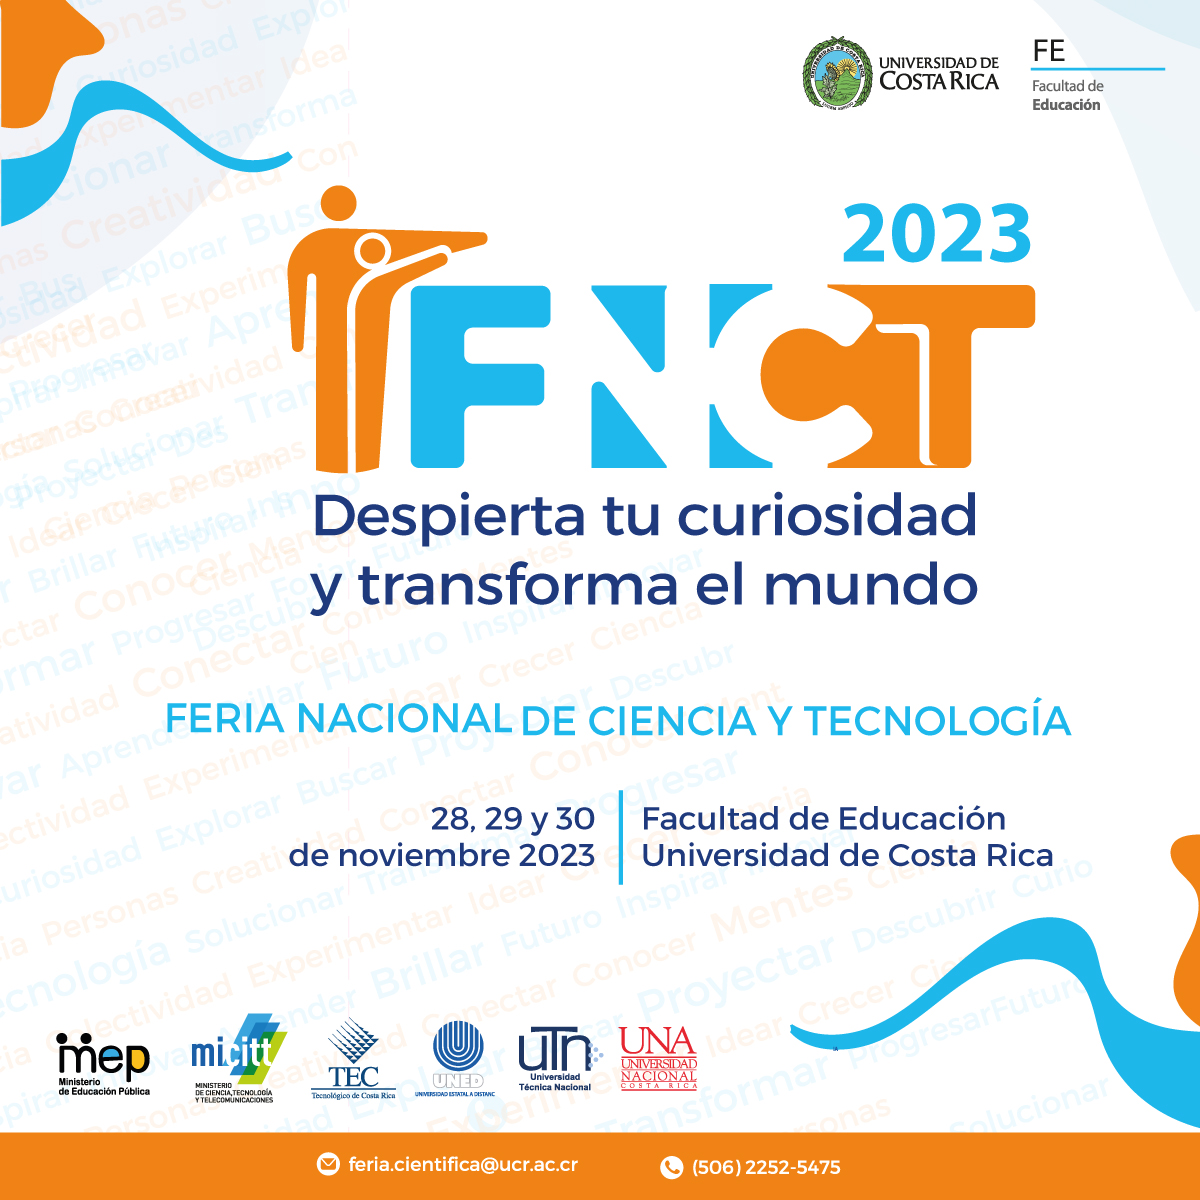 Feria Nacional de Ciencia y Tecnología celebra su edición 2023 en la Facultad de Educación